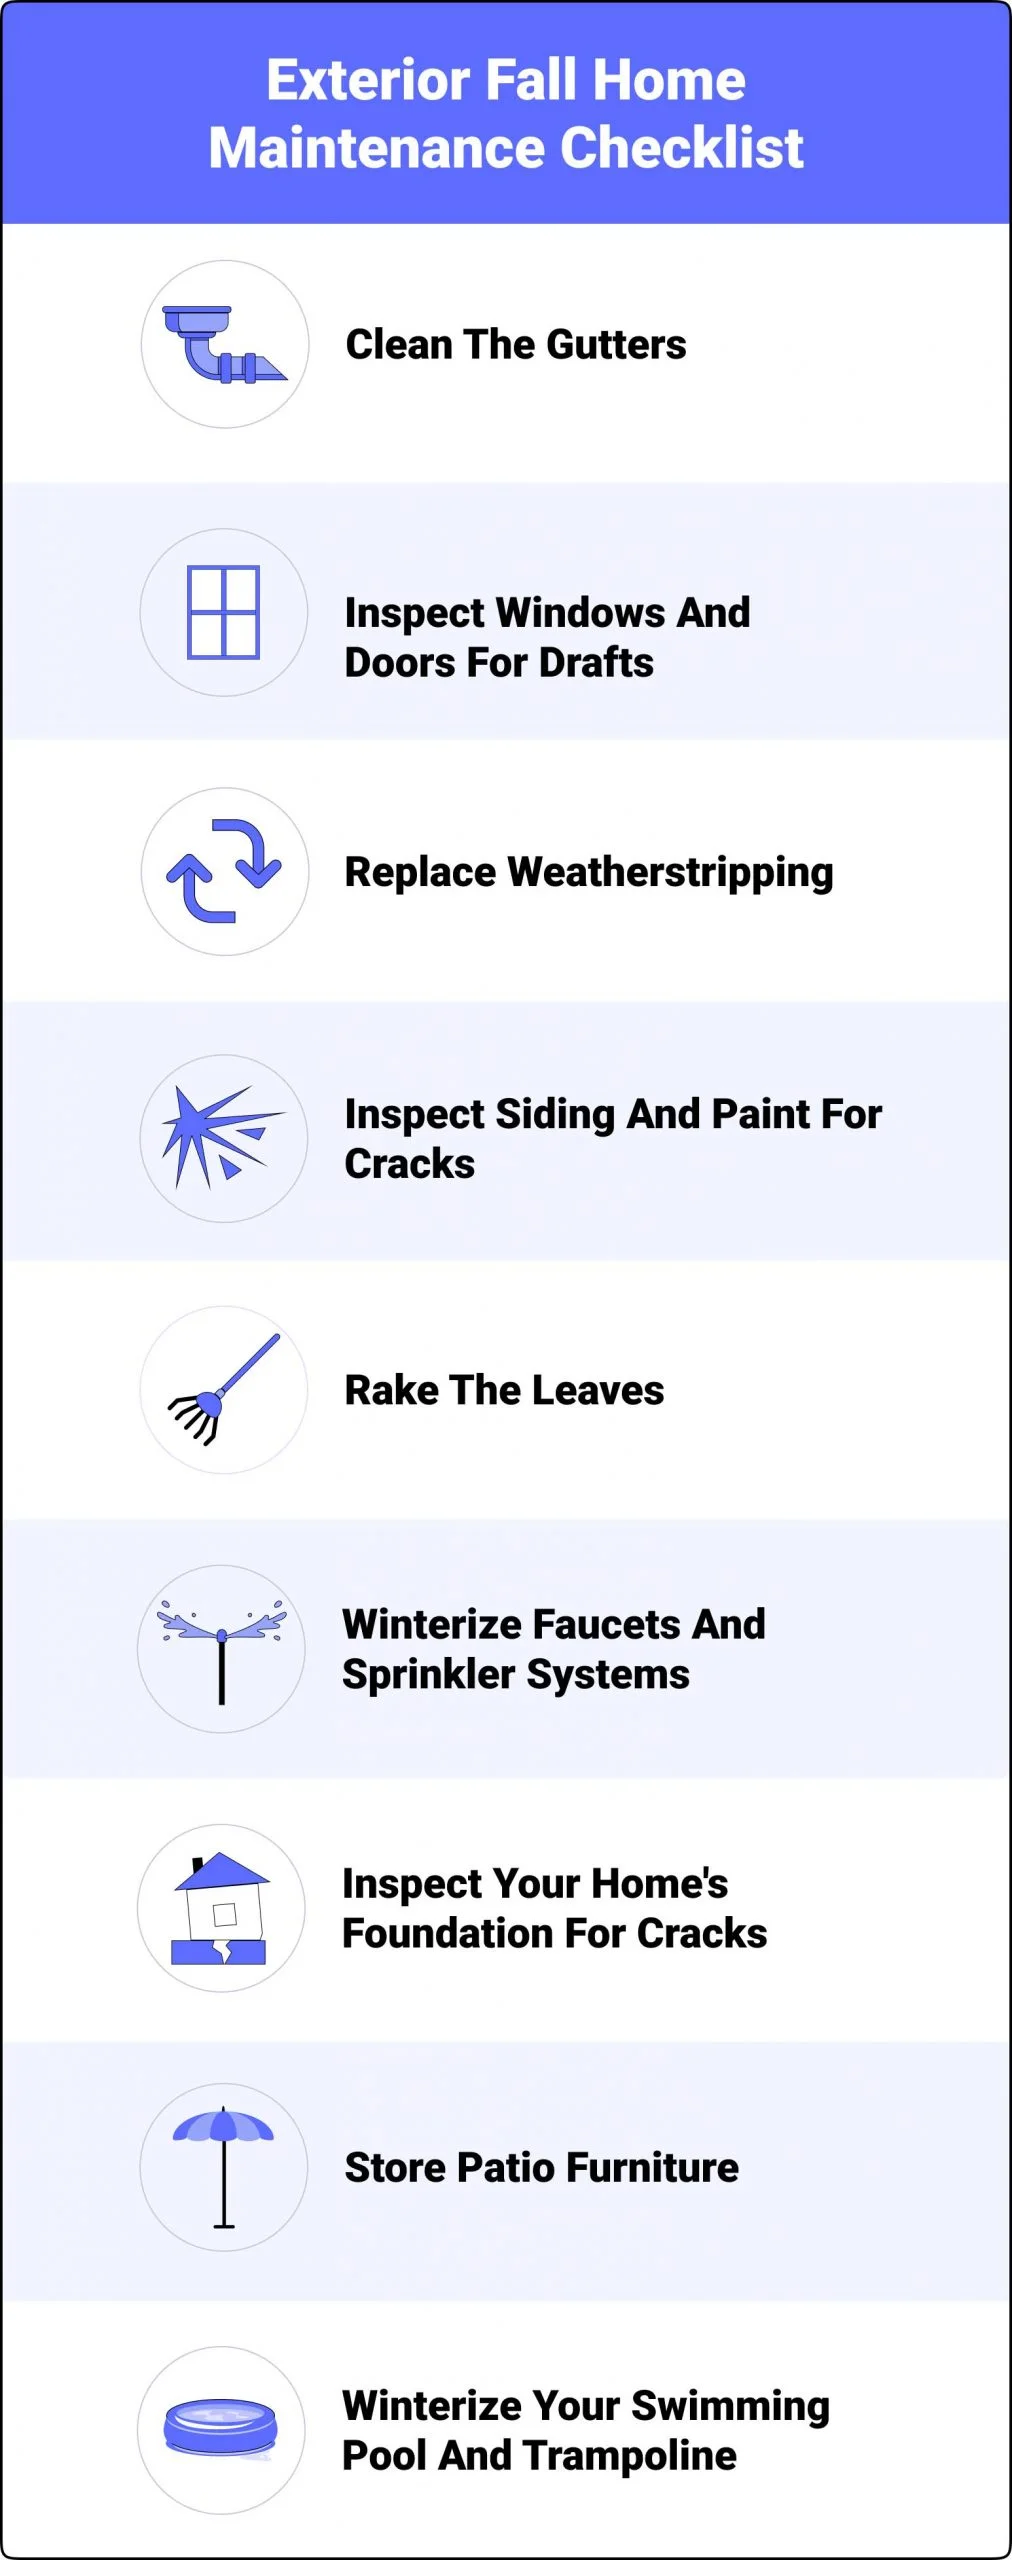 Exterior Fall Home Maintenance Checklist